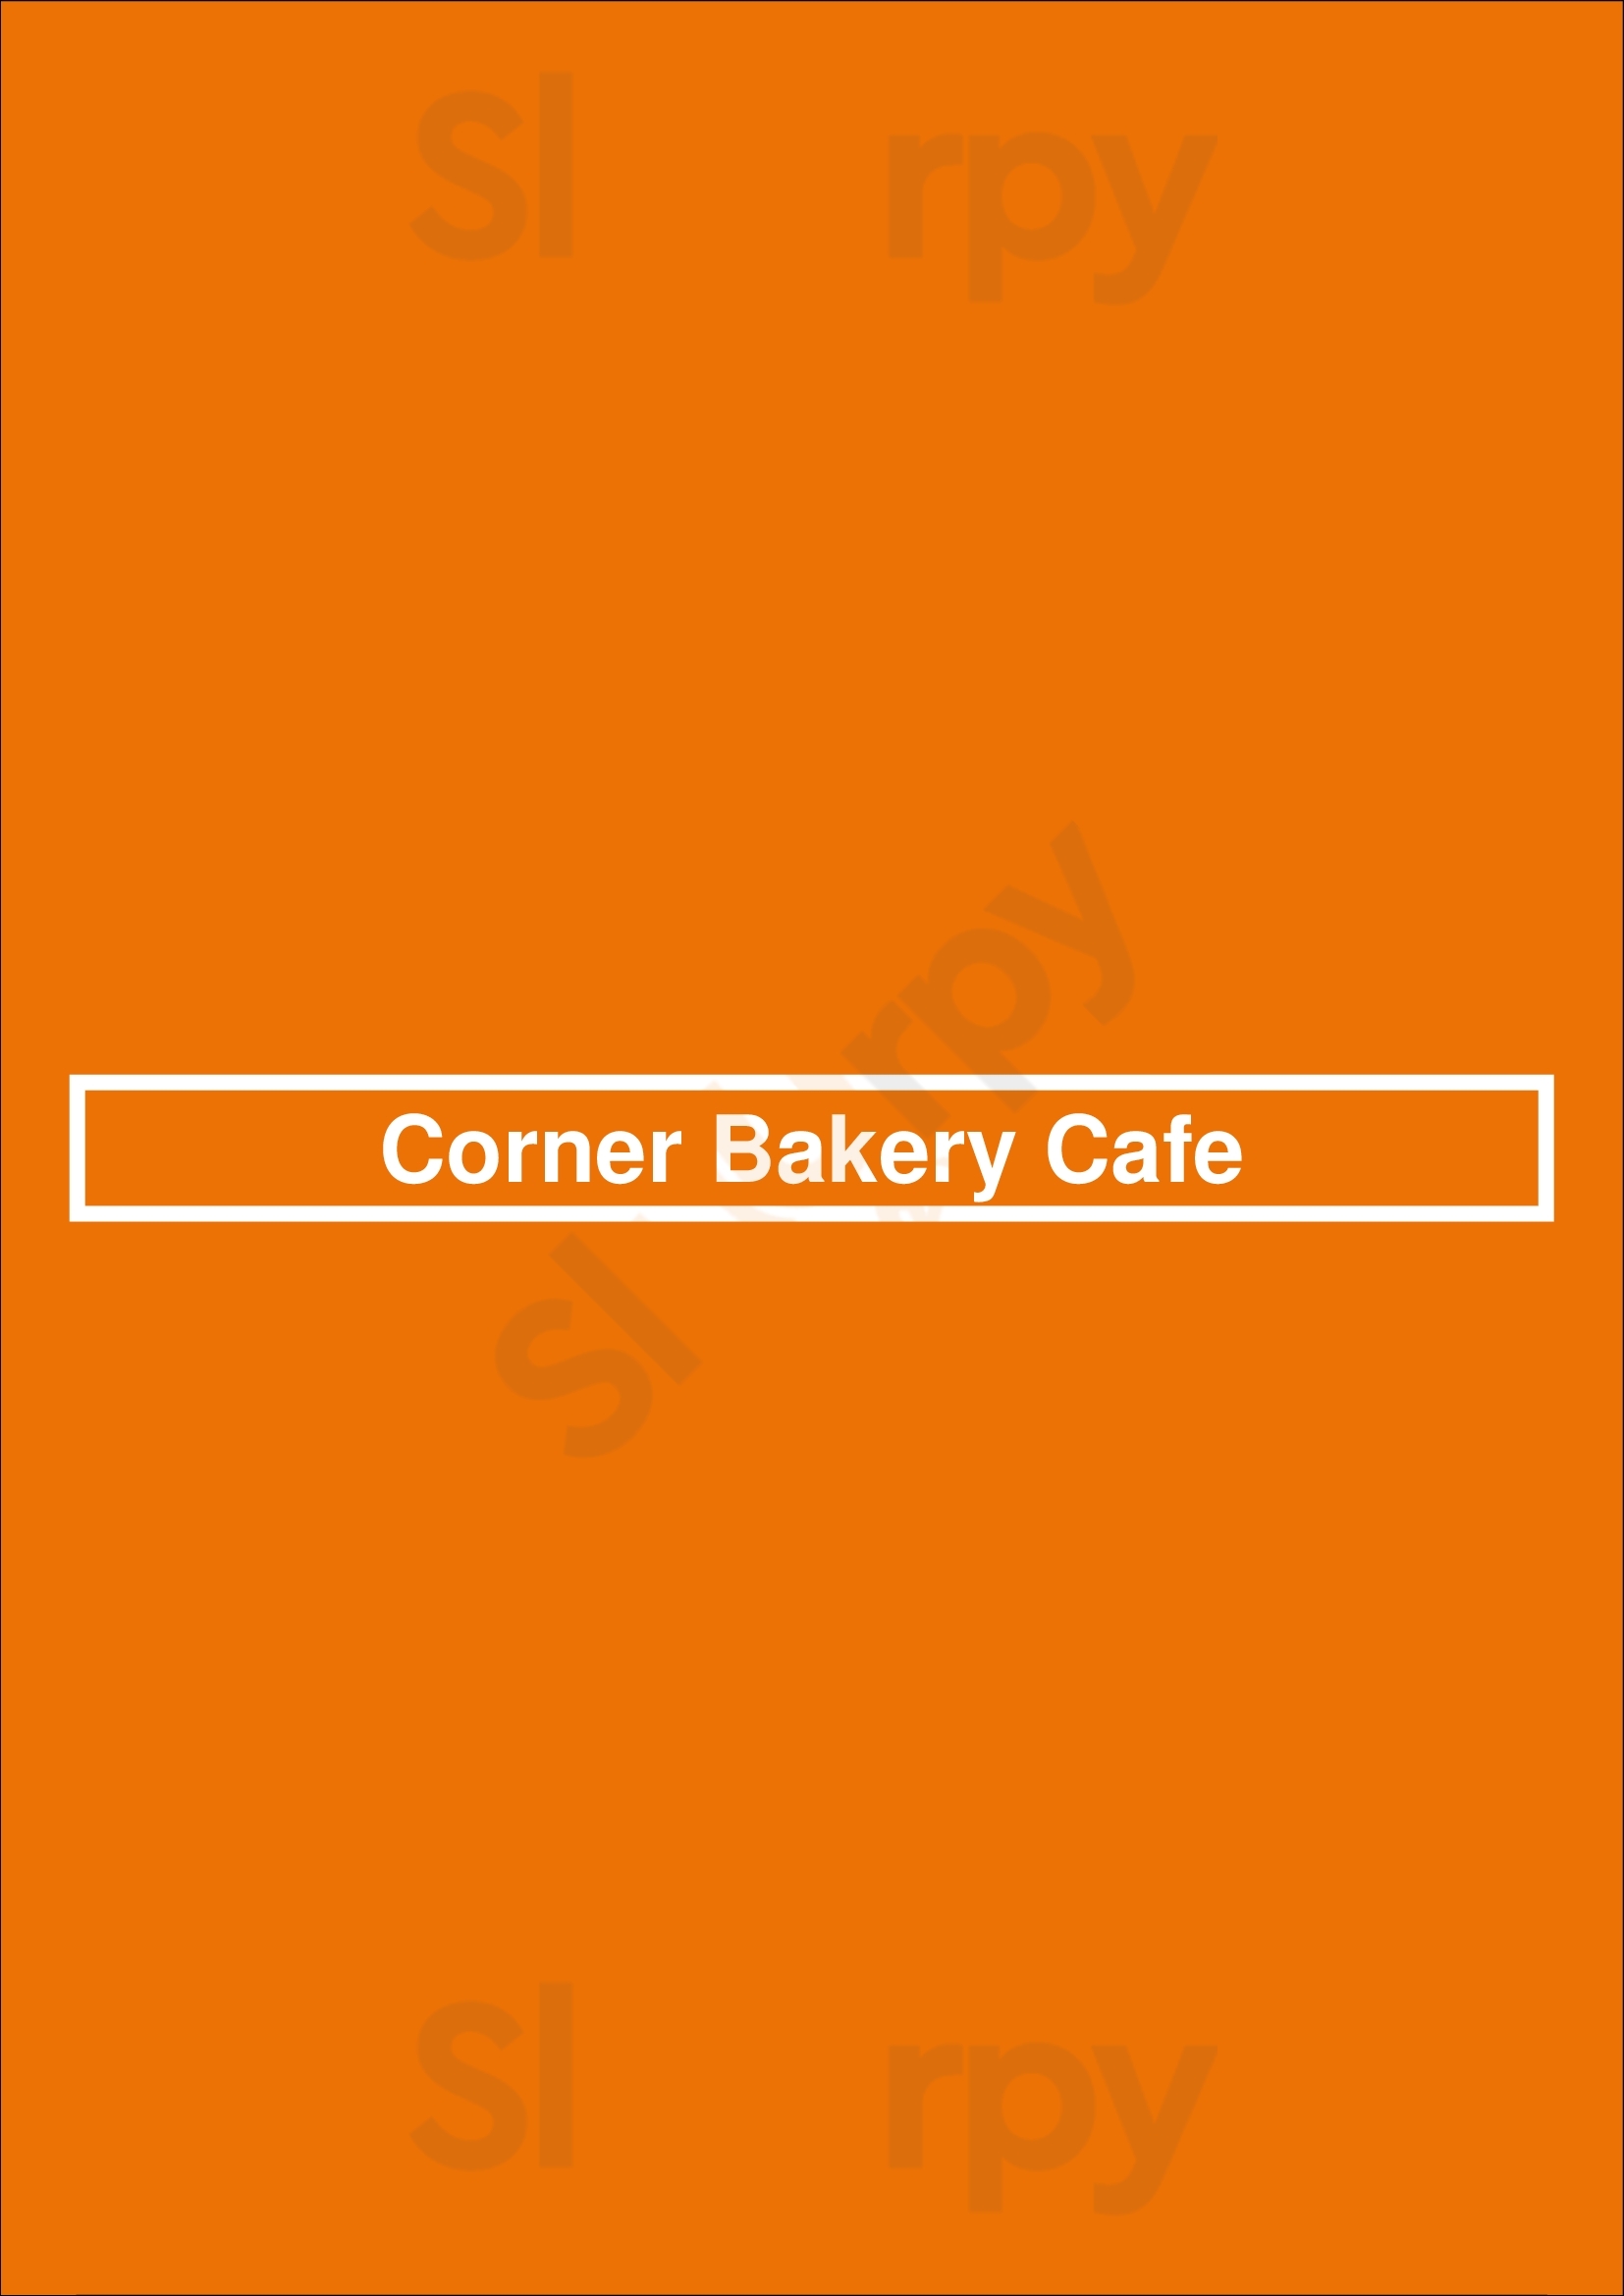 Corner Bakery Cafe San Antonio Menu - 1